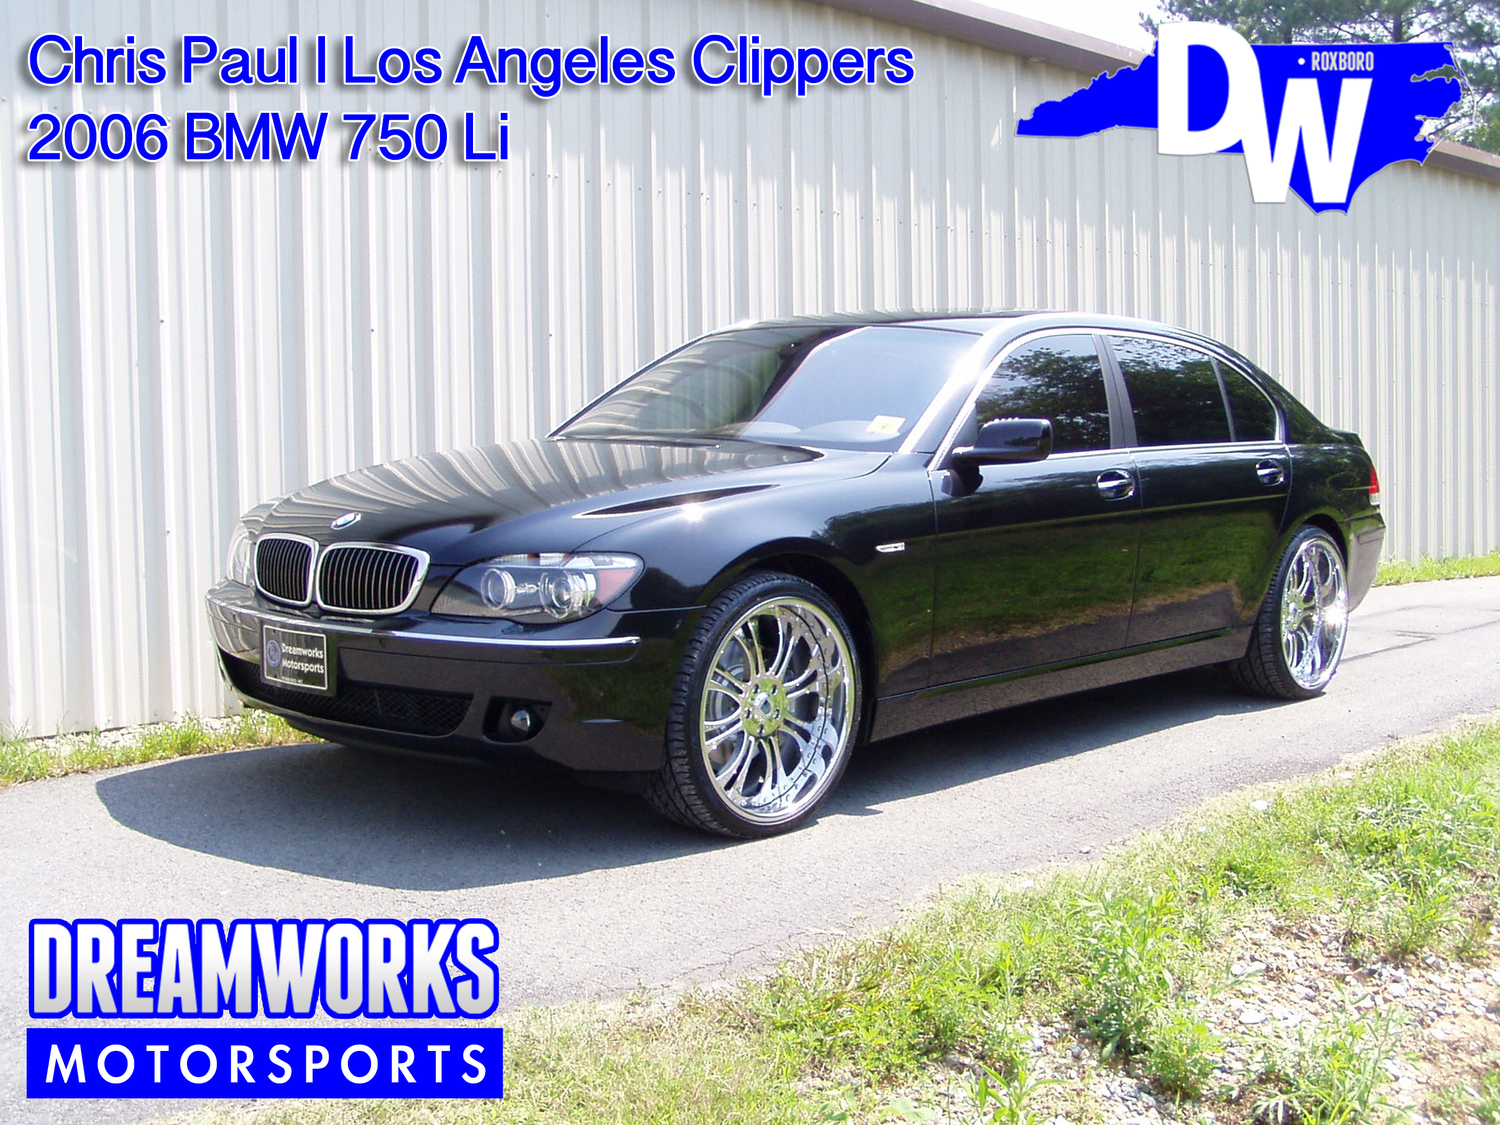 Chris-Paul-NBA-LA-Clippers-New-Orleans-Hornets-Houston-Rockets-Wake-Forest-Demon-Deacon-BMW-750Li-Dreamworks-Motorsports-1.jpg